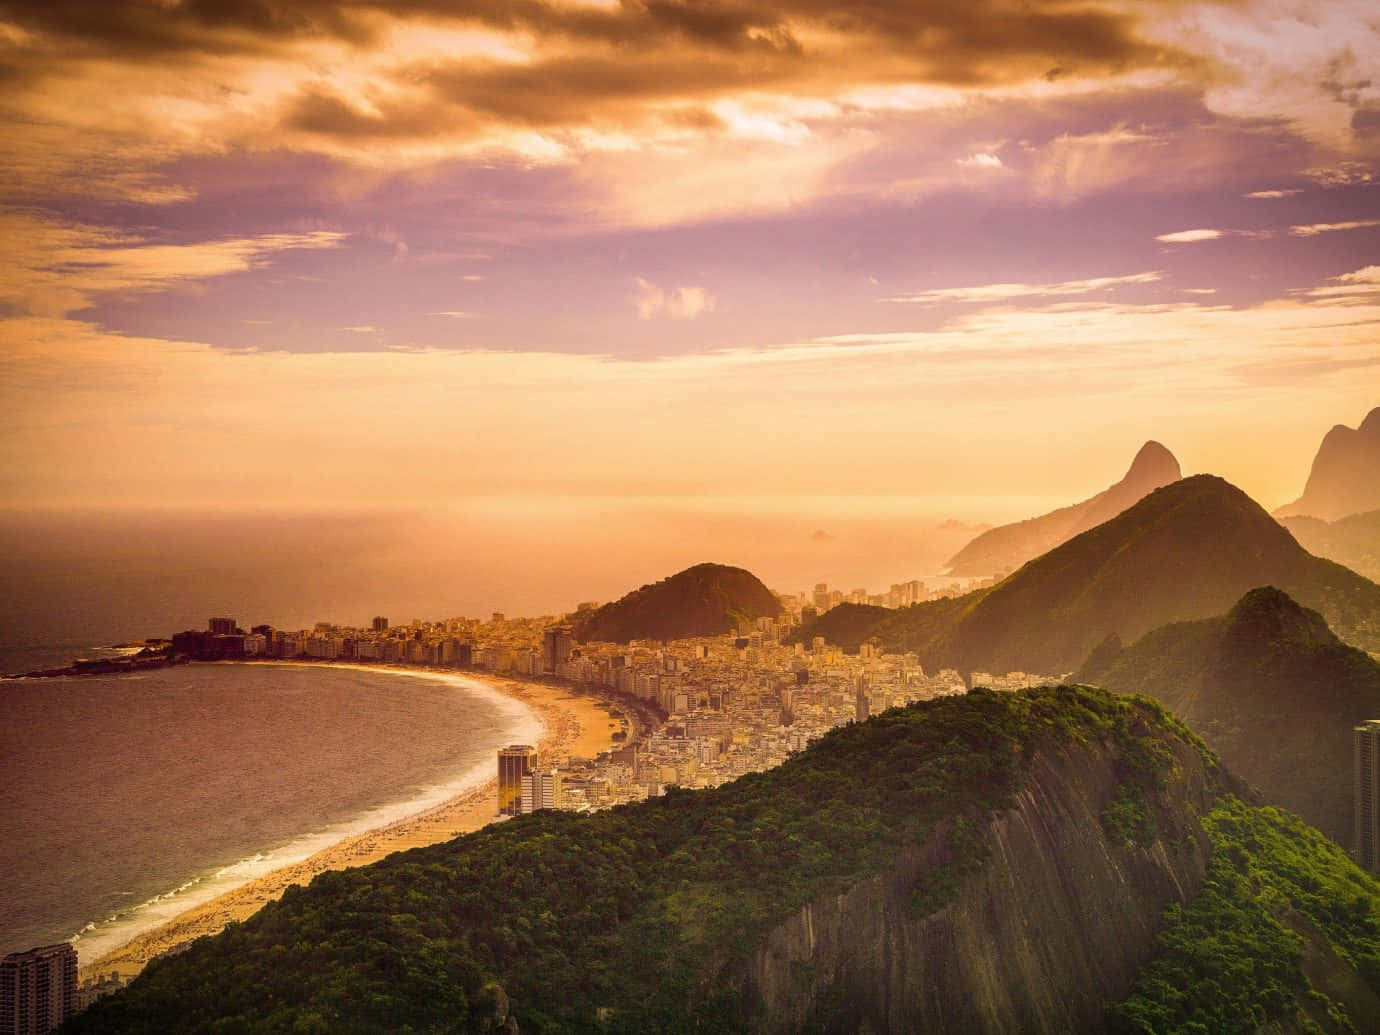 Stunning Brazilian Beach at Sunset Wallpaper